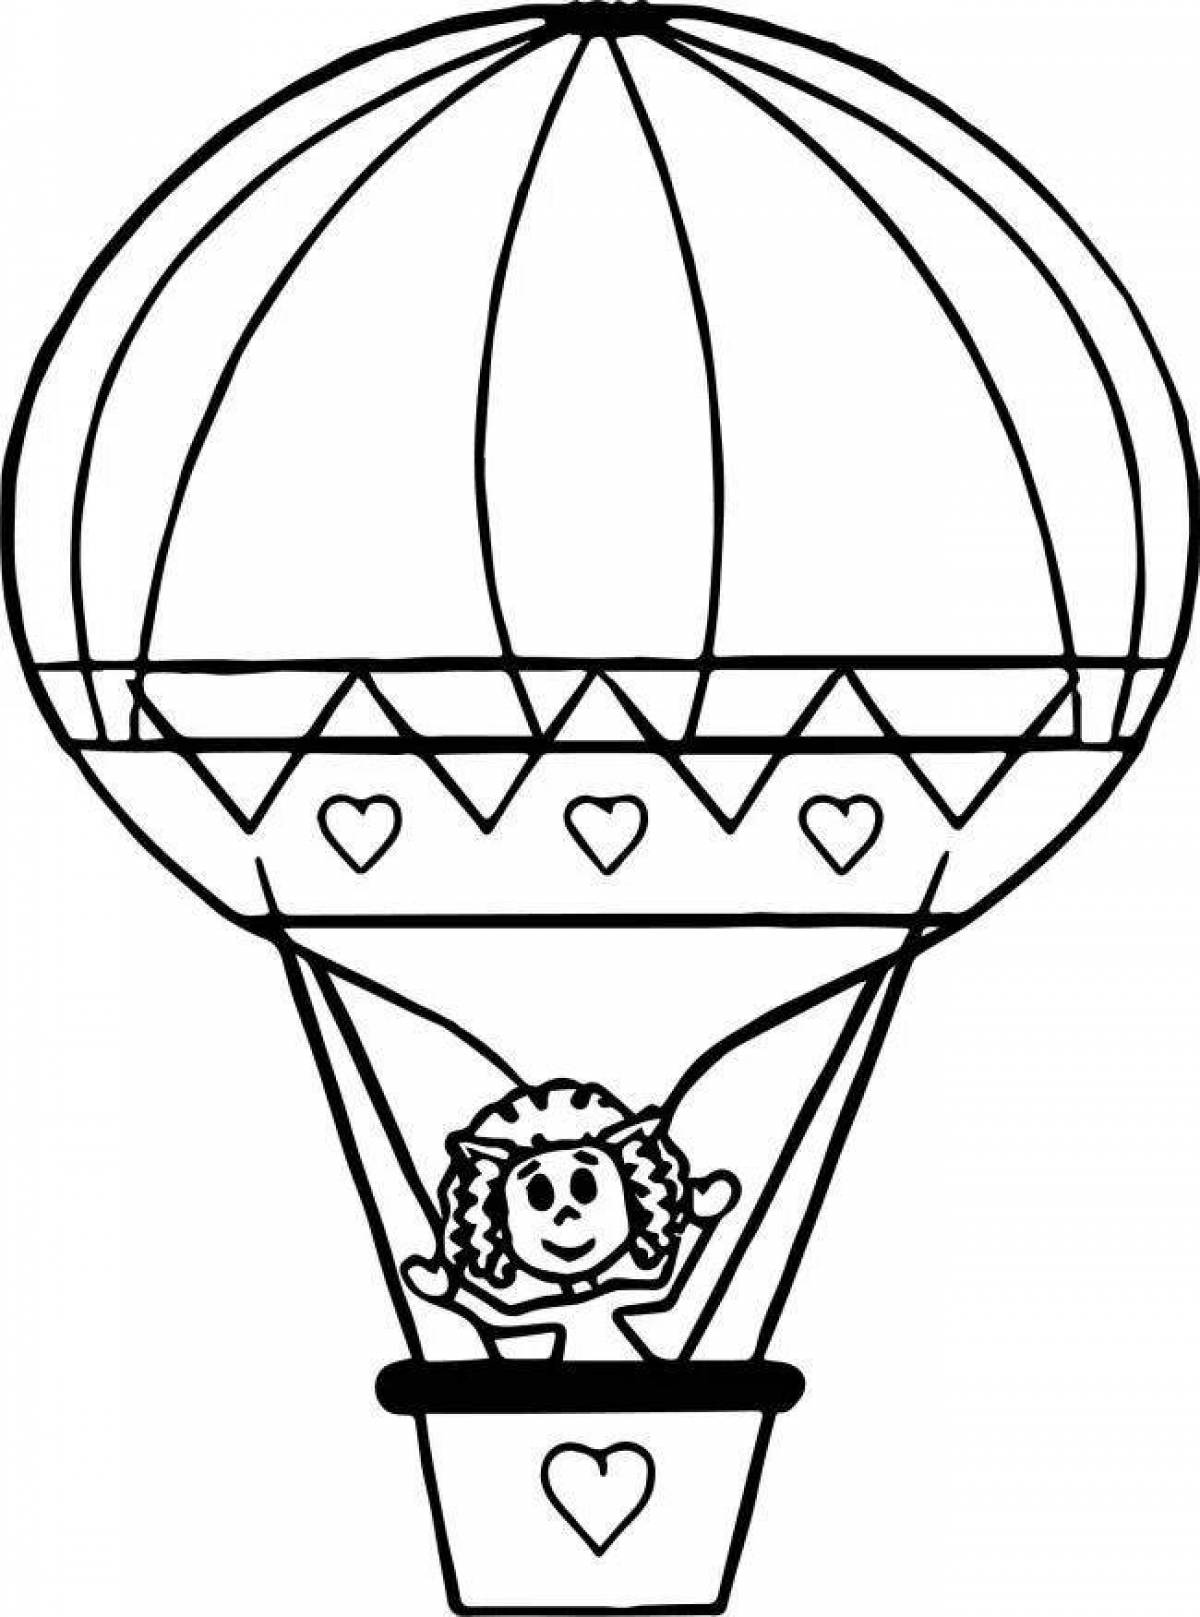 Раскраска праздничный воздушный шар с корзиной для детей